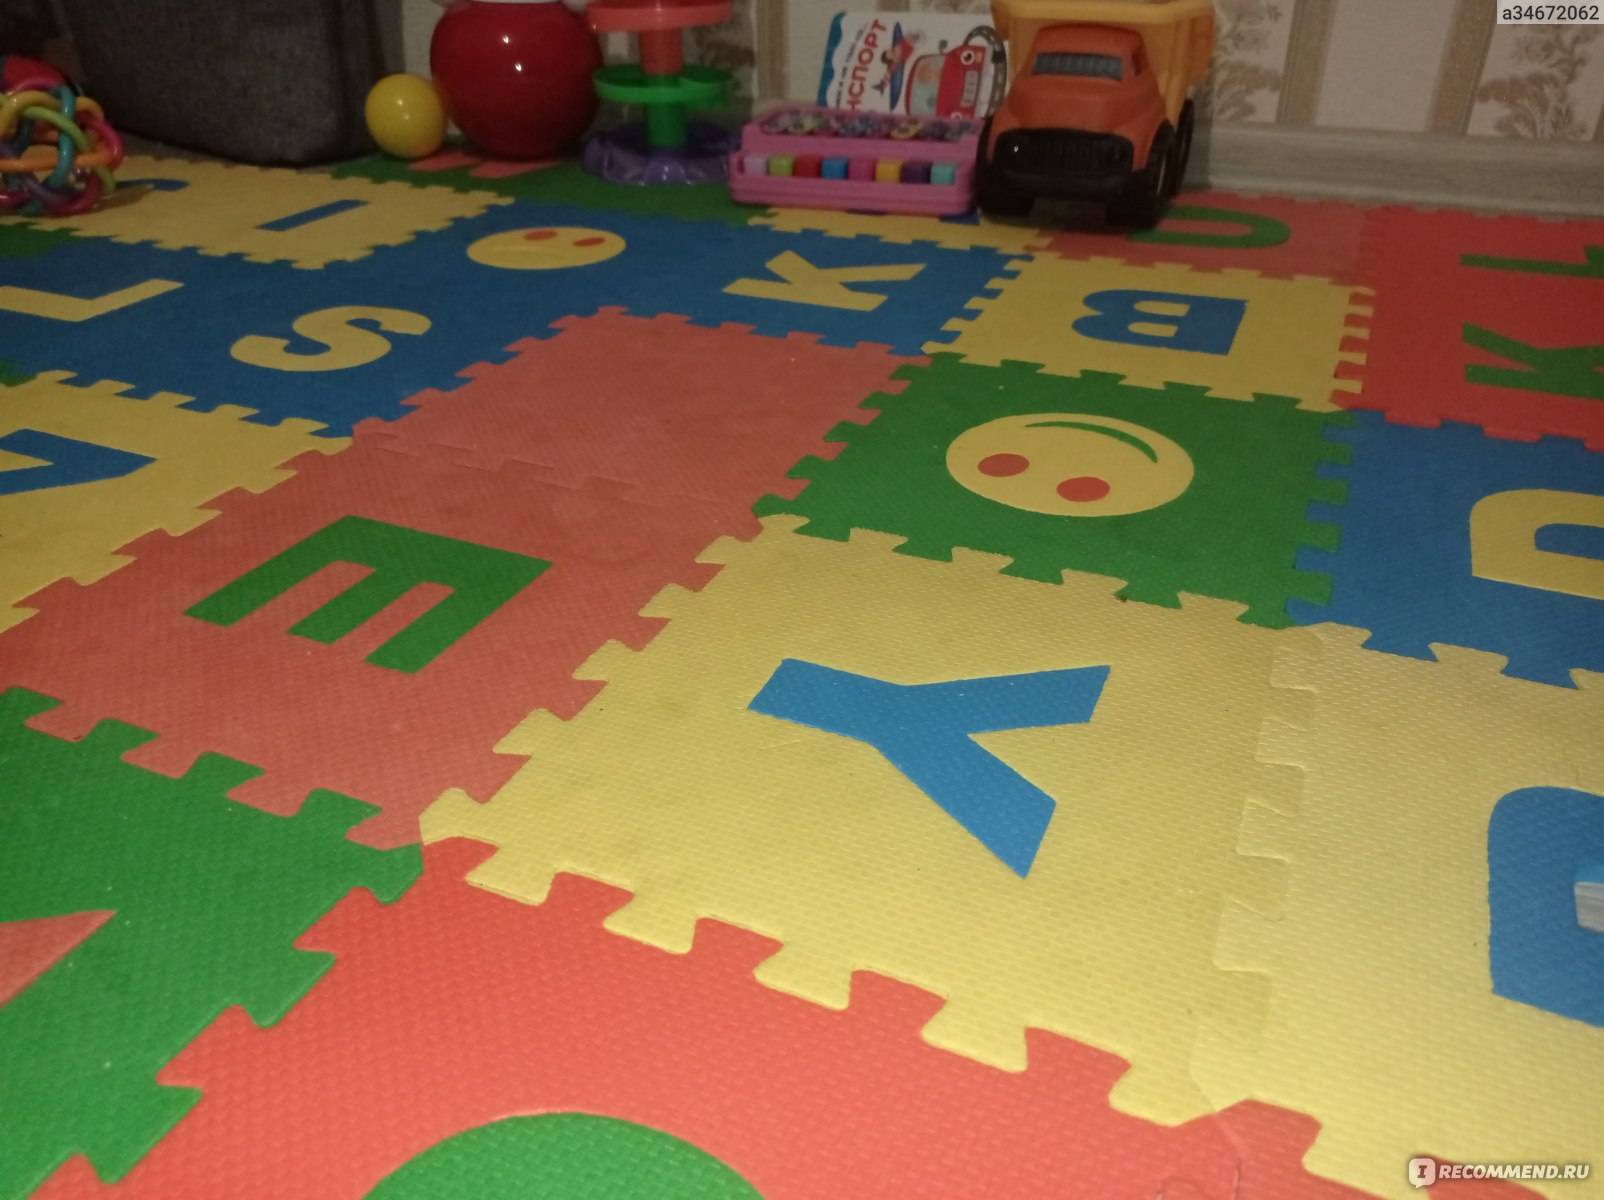 Мягкий пол для детских комнат — как создать комфорт и здоровые условия по разумной стоимости